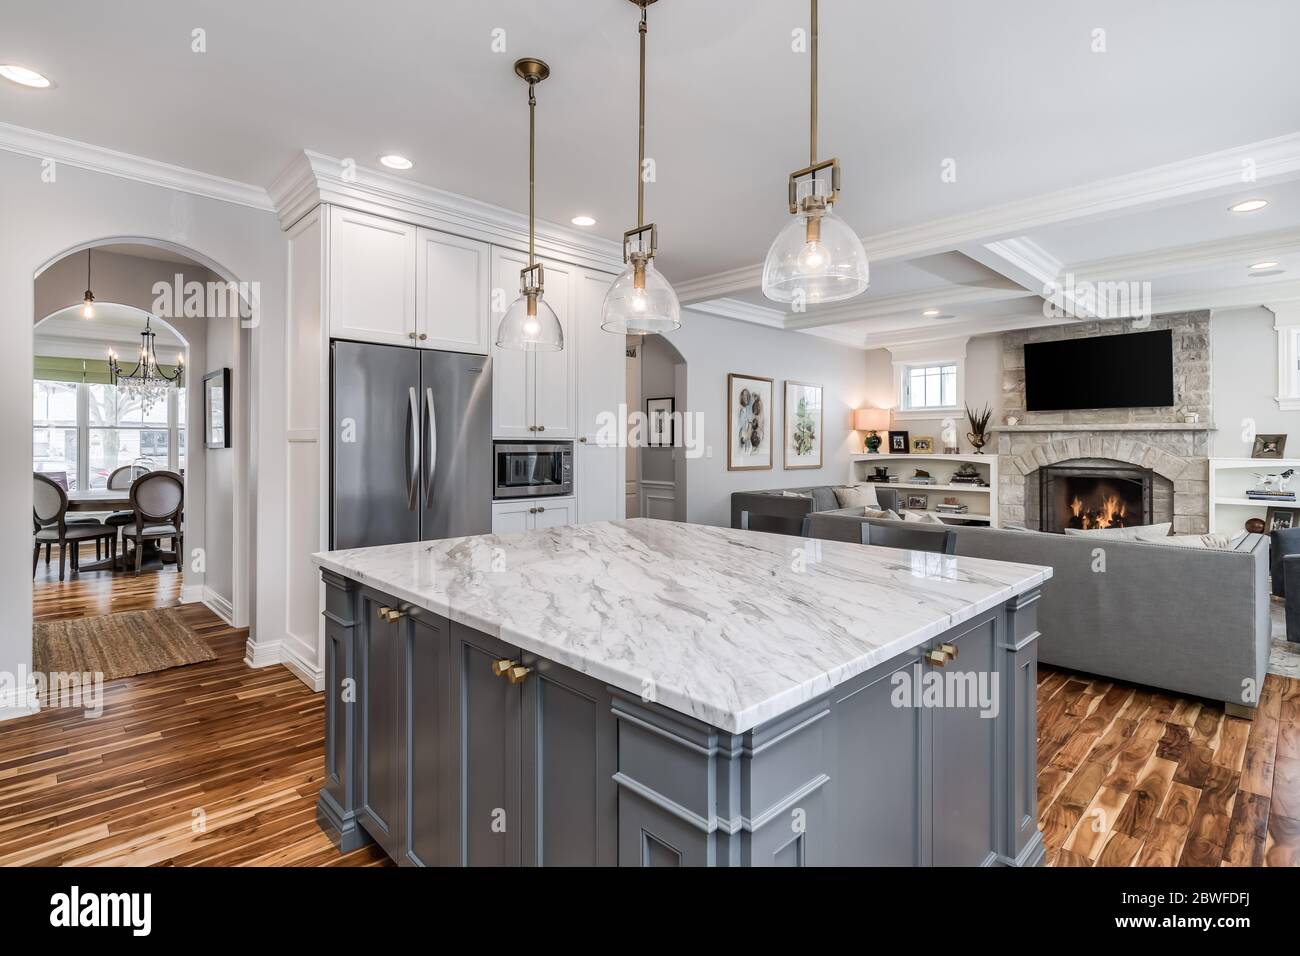 Eine luxuriöse, weiße Küche mit einer Granitplatte und einem gefliesten Backsplash hinter dem Edelstahl KitchenAid Herd. Stockfoto